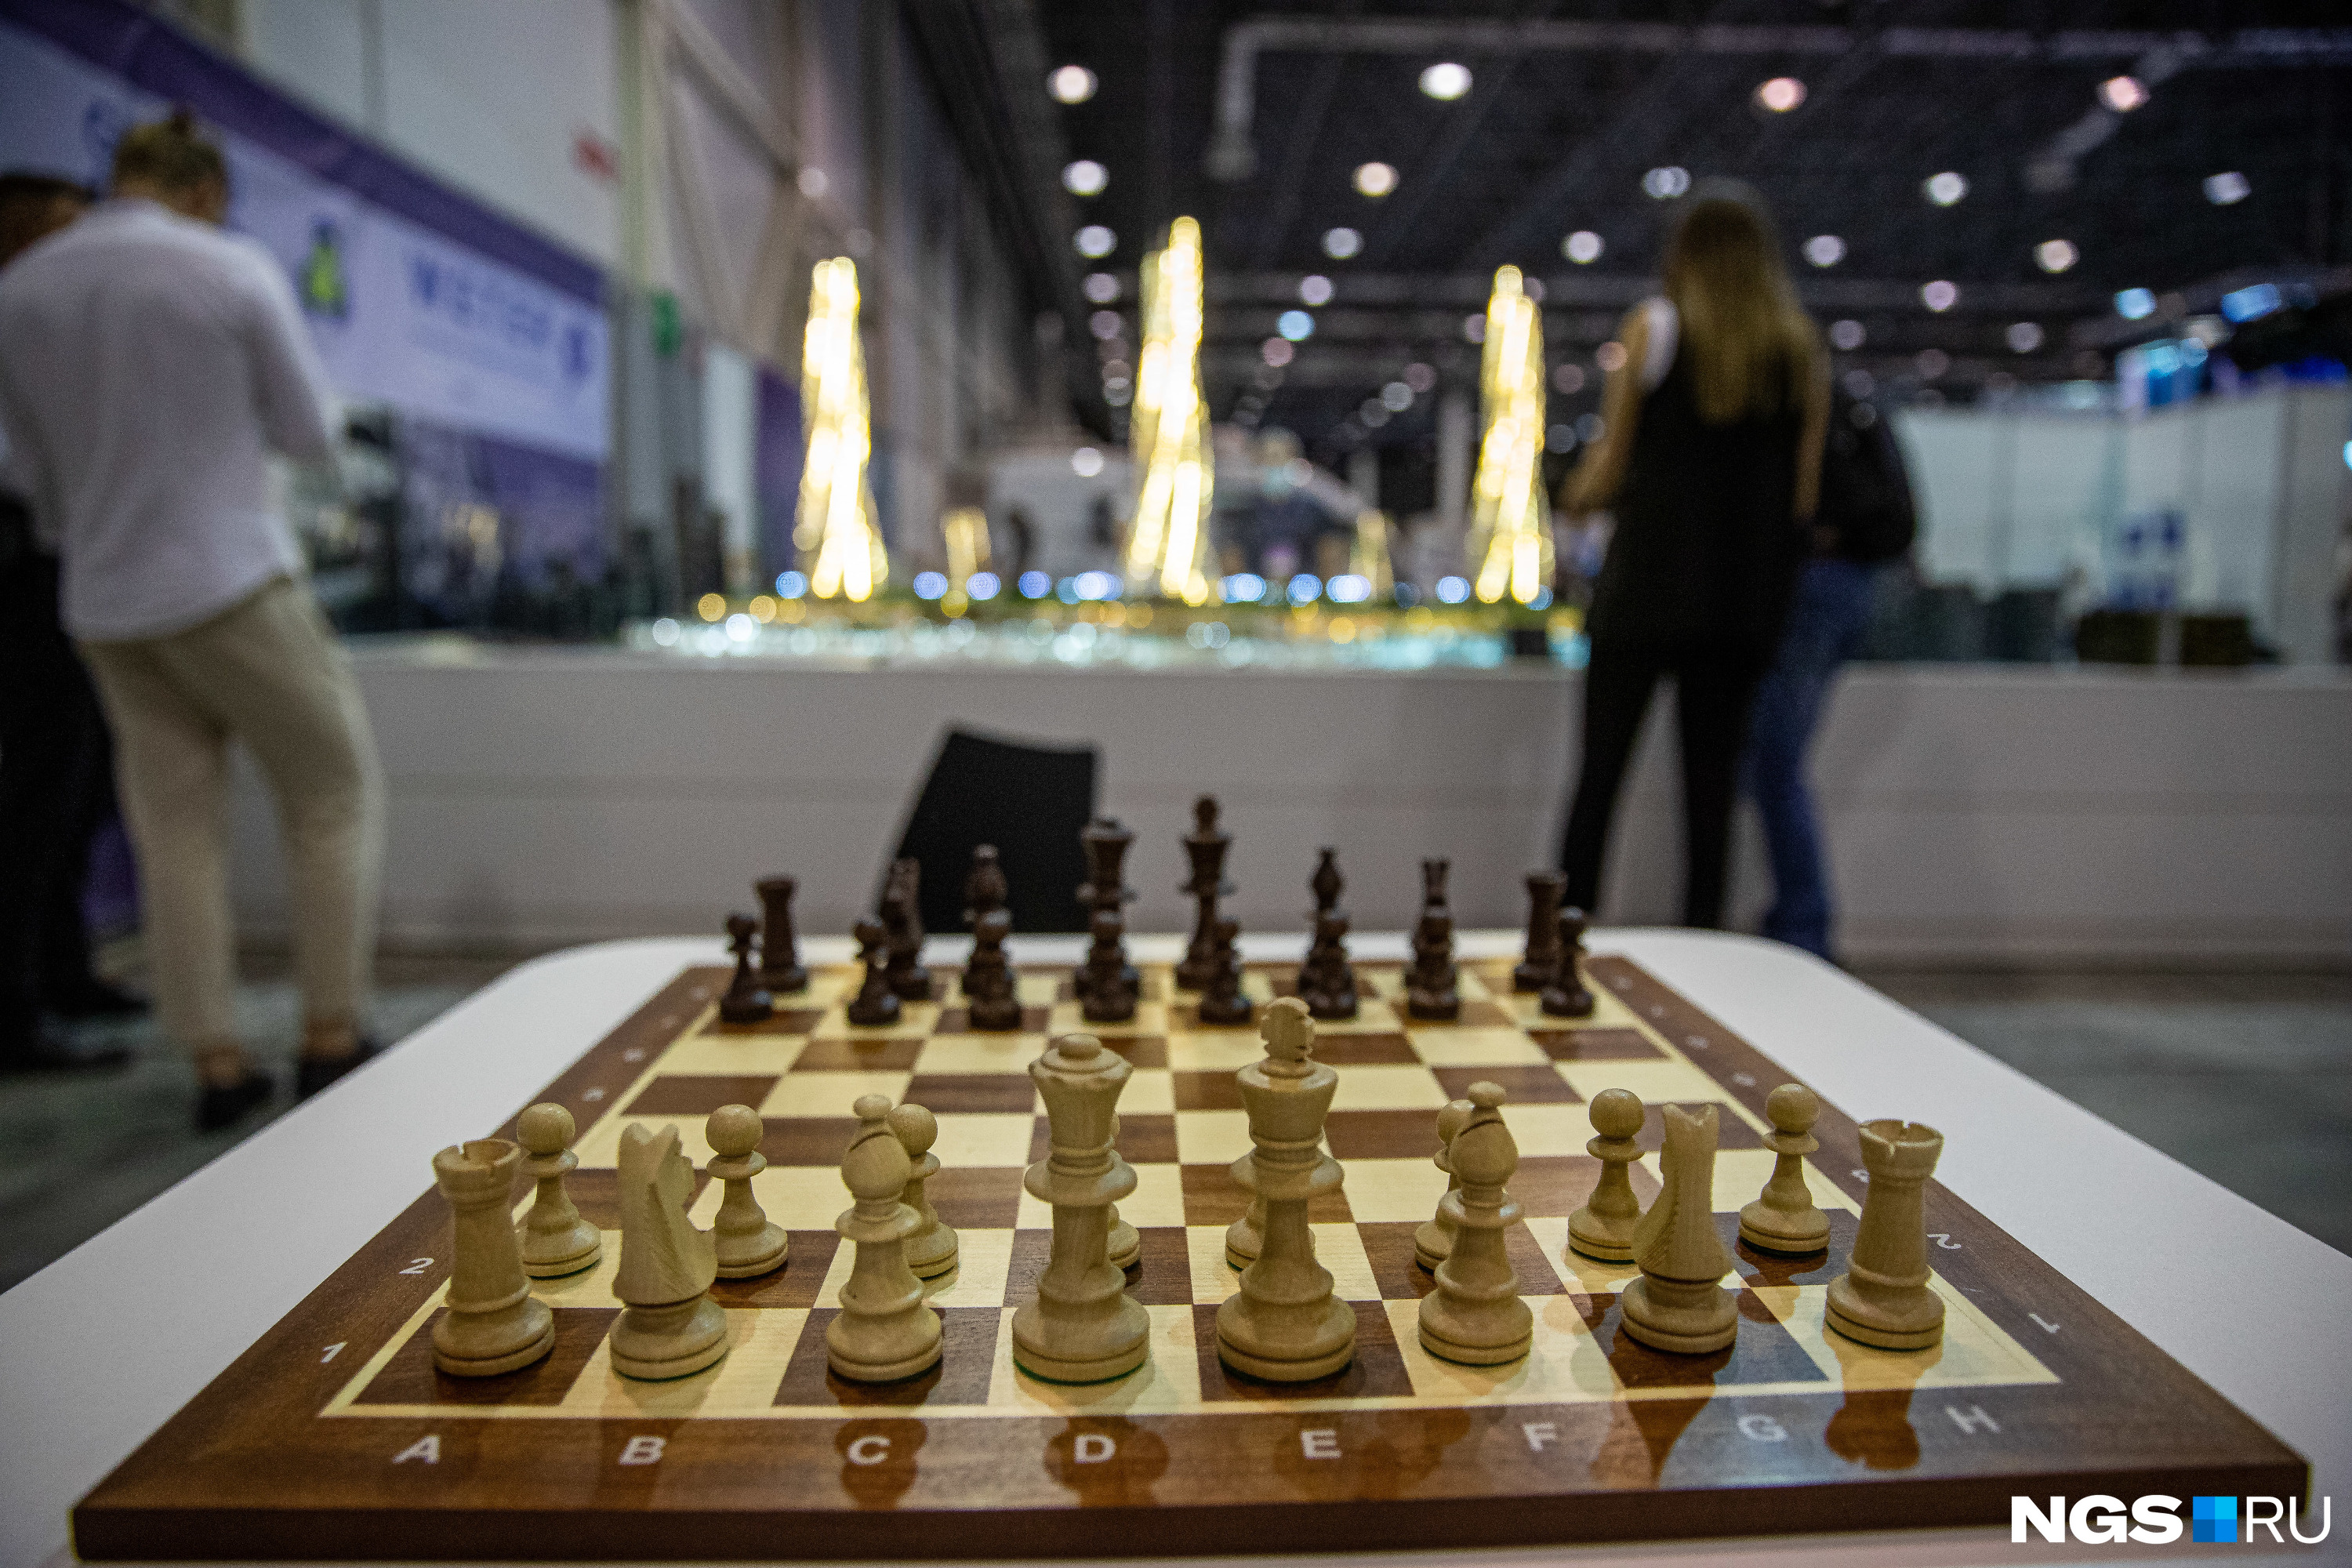 Участники форума, посвященного новым технологиям, могли поиграть в аналоговые шахматы